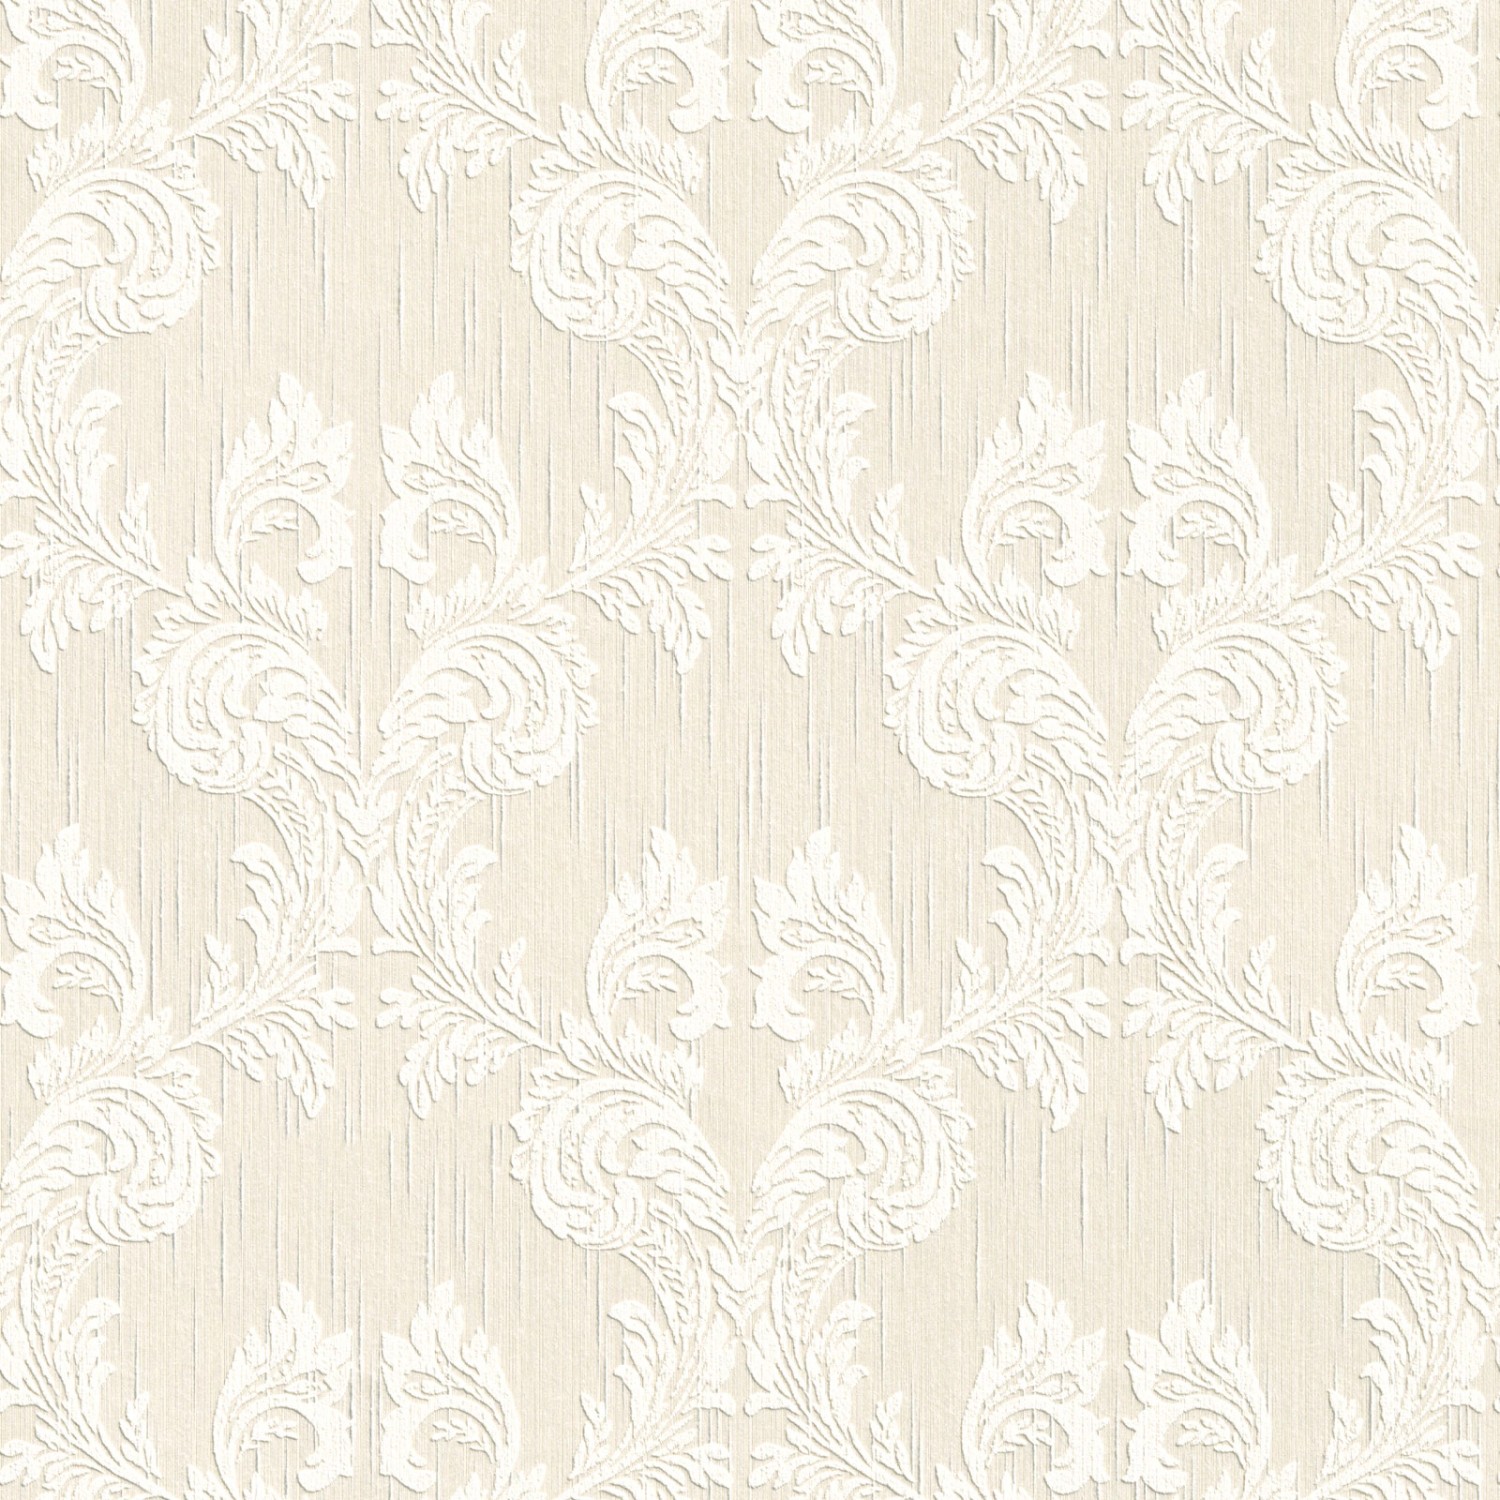 Bricoflor Helle Tapete Elegant Barock Textiltapete Creme Weiß Ideal für Schlafzimmer und Wohnzimmer Edle Textil Vliestap